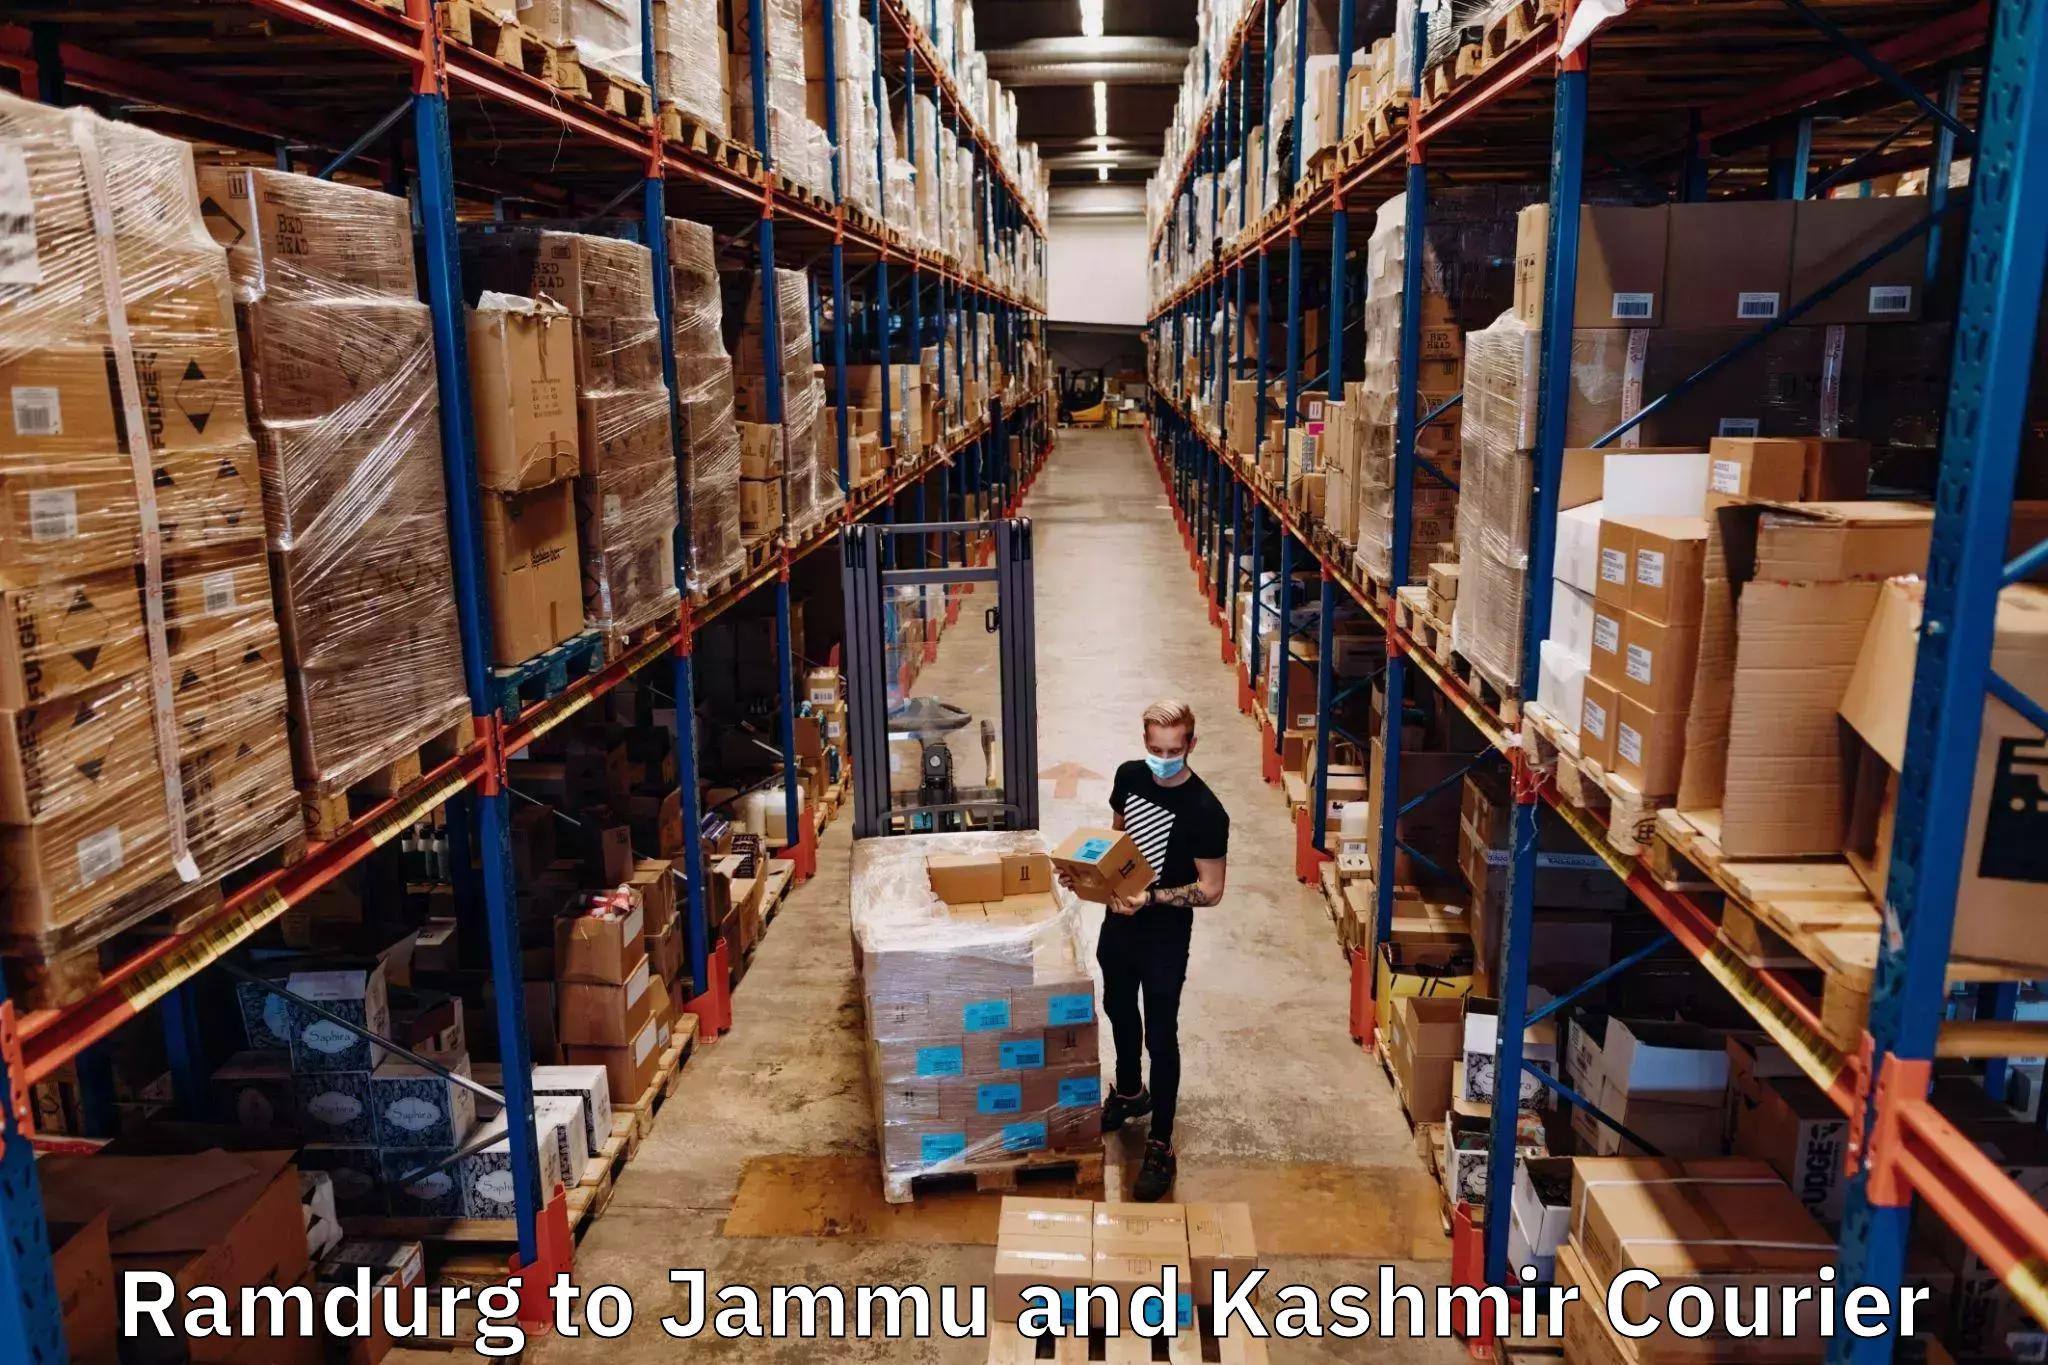 24/7 courier service Ramdurg to University of Kashmir Srinagar